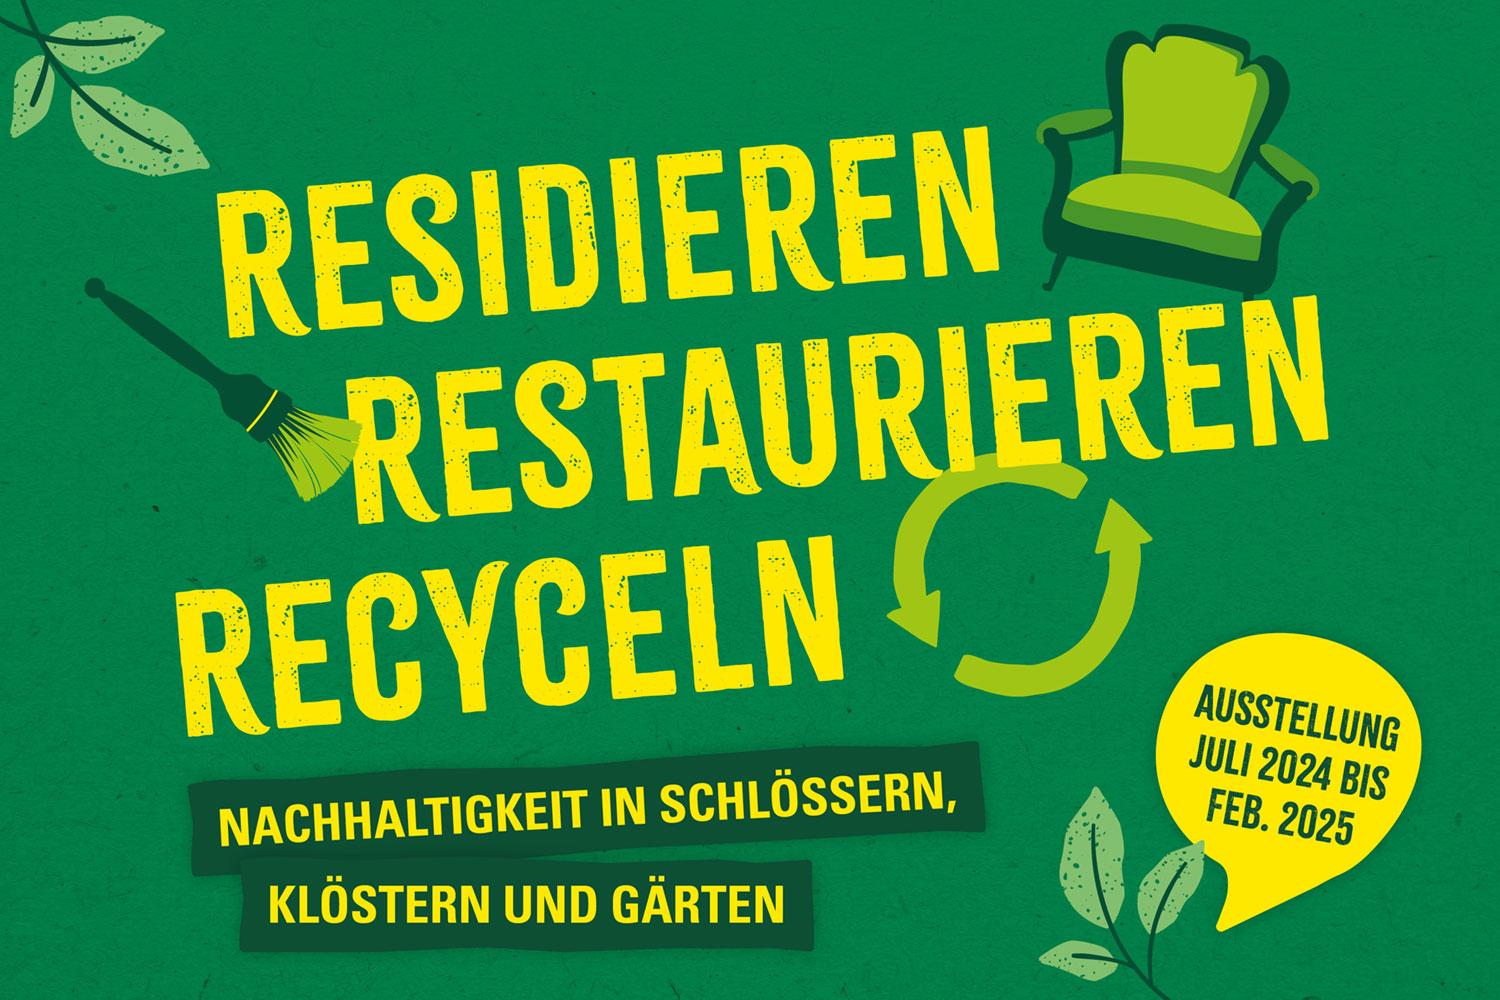 Staatliche Schlösser und Gärten Baden-Württemberg, Werbemotiv zum Projekt "Residieren, Restaurieren, Recyclen"